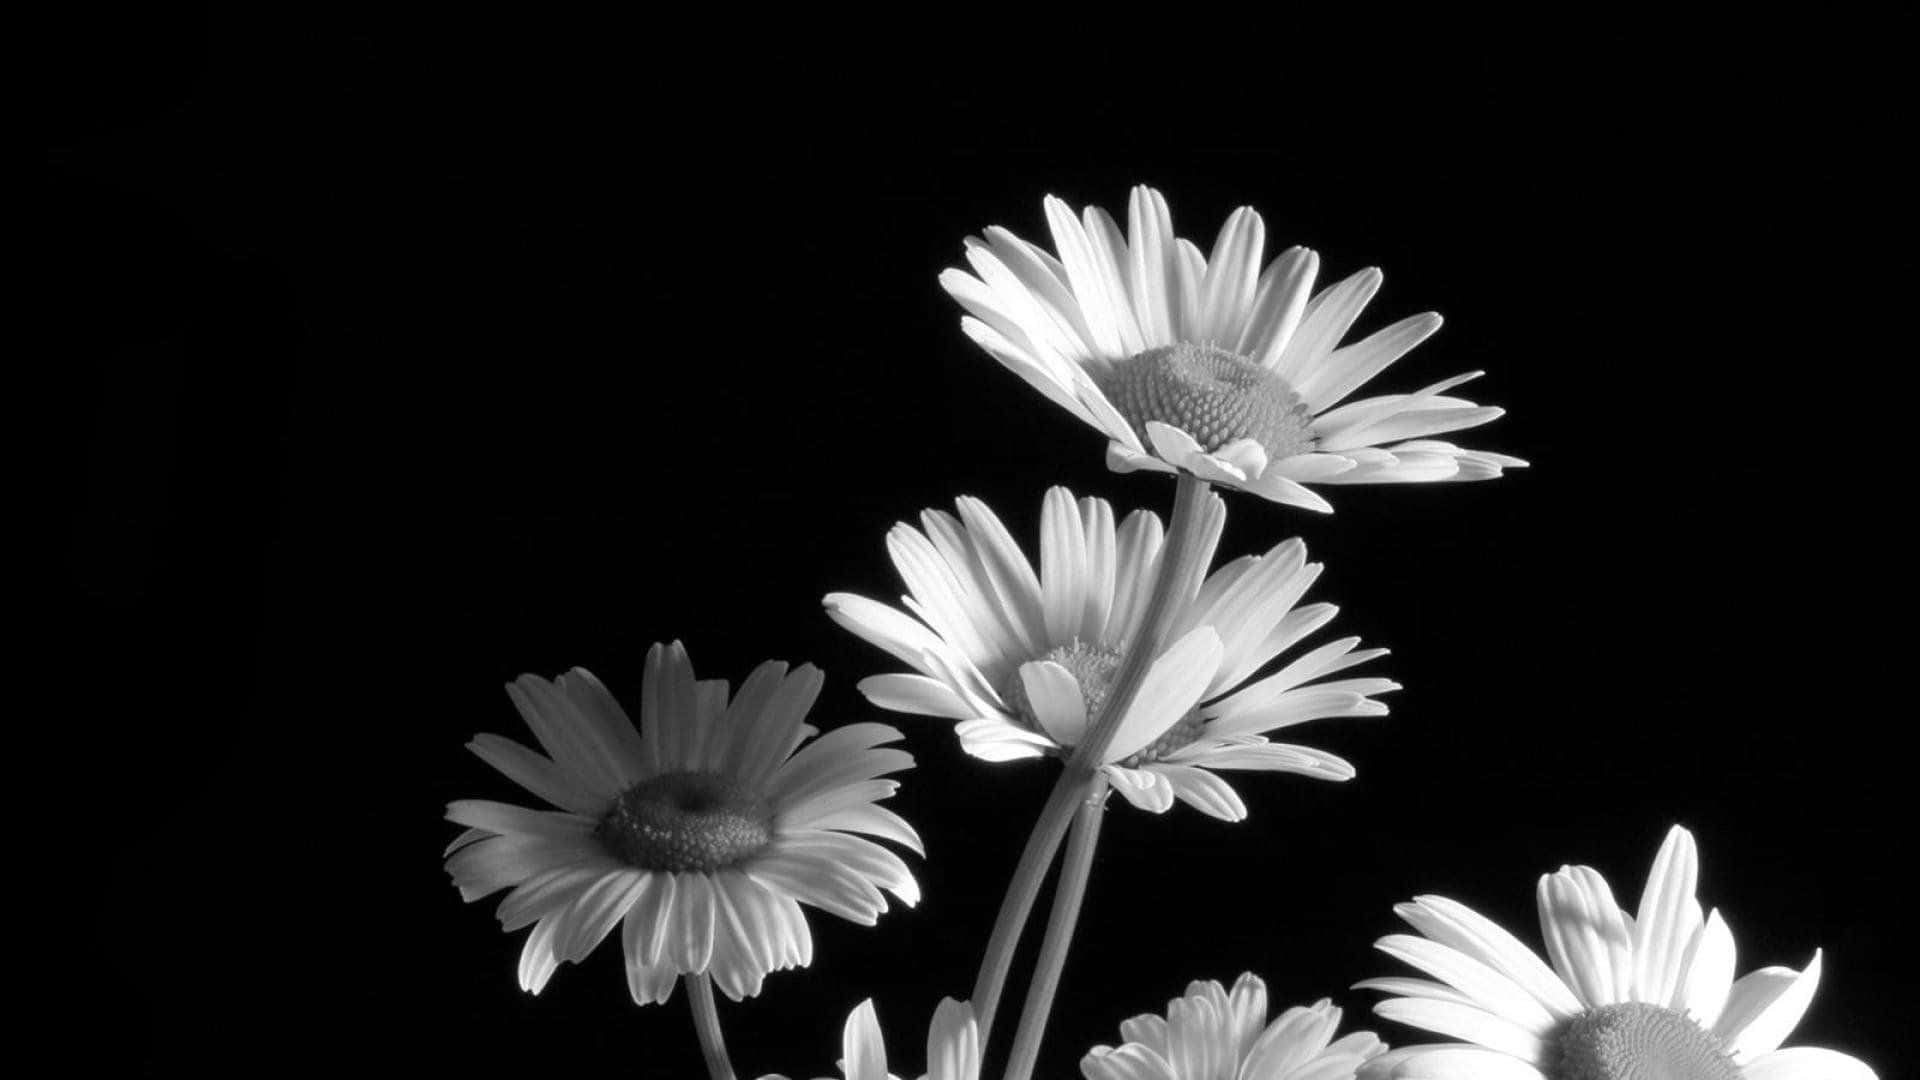 Tætbillede Af En Sort Og Hvid Blomst. Wallpaper